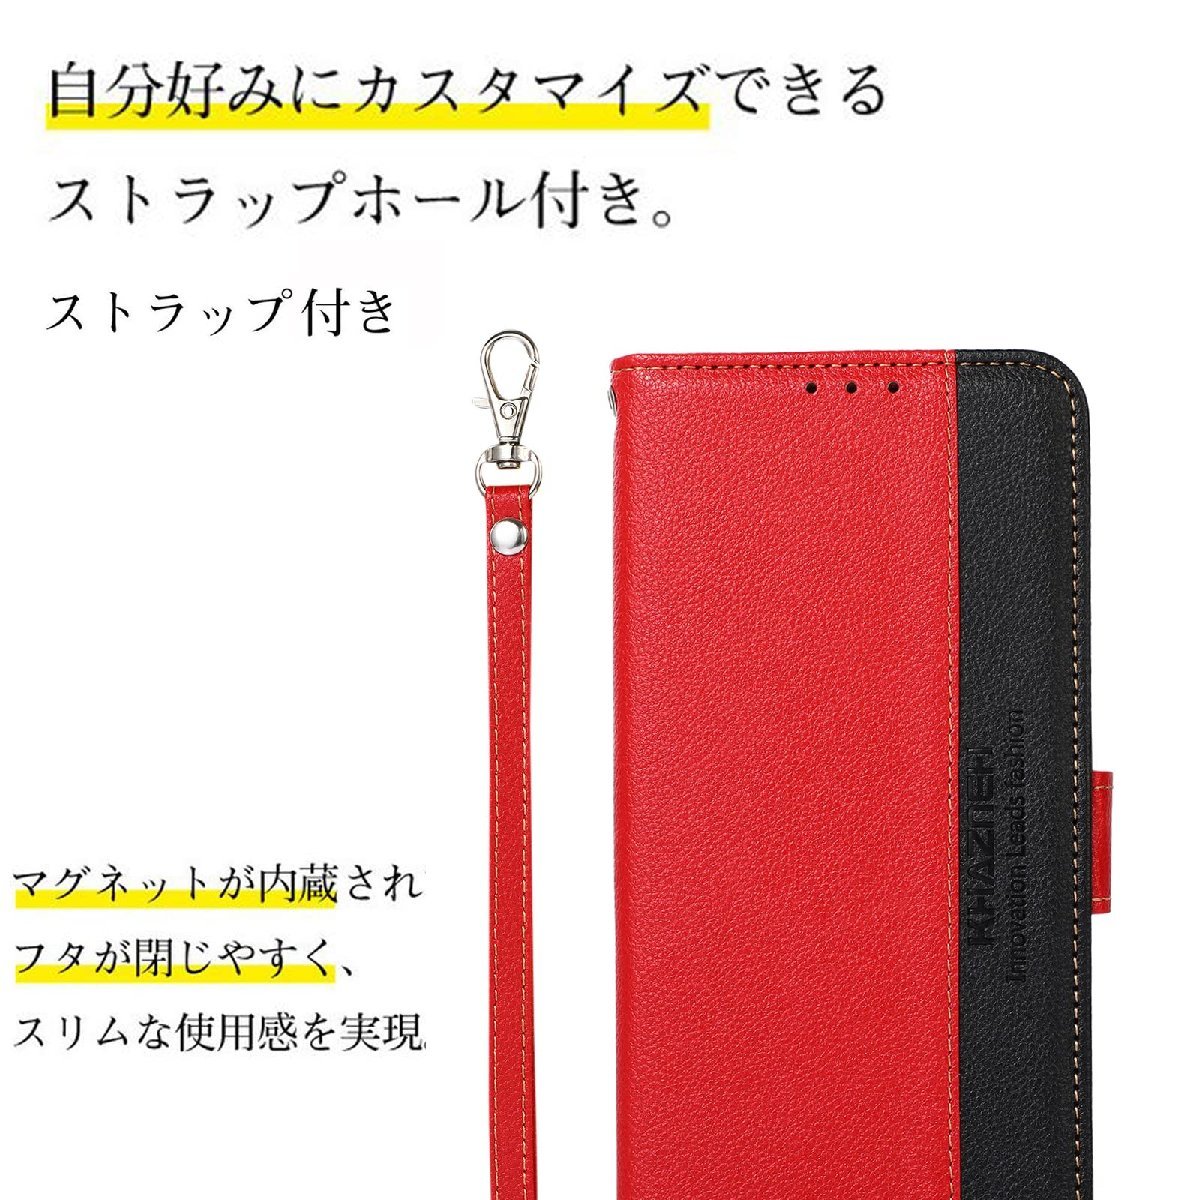 送料無料★Redmi Note 9T 5G ケース 手帳型 耐衝撃 ストラップ付き カード収納 スタンド機能 (レッド)_画像4